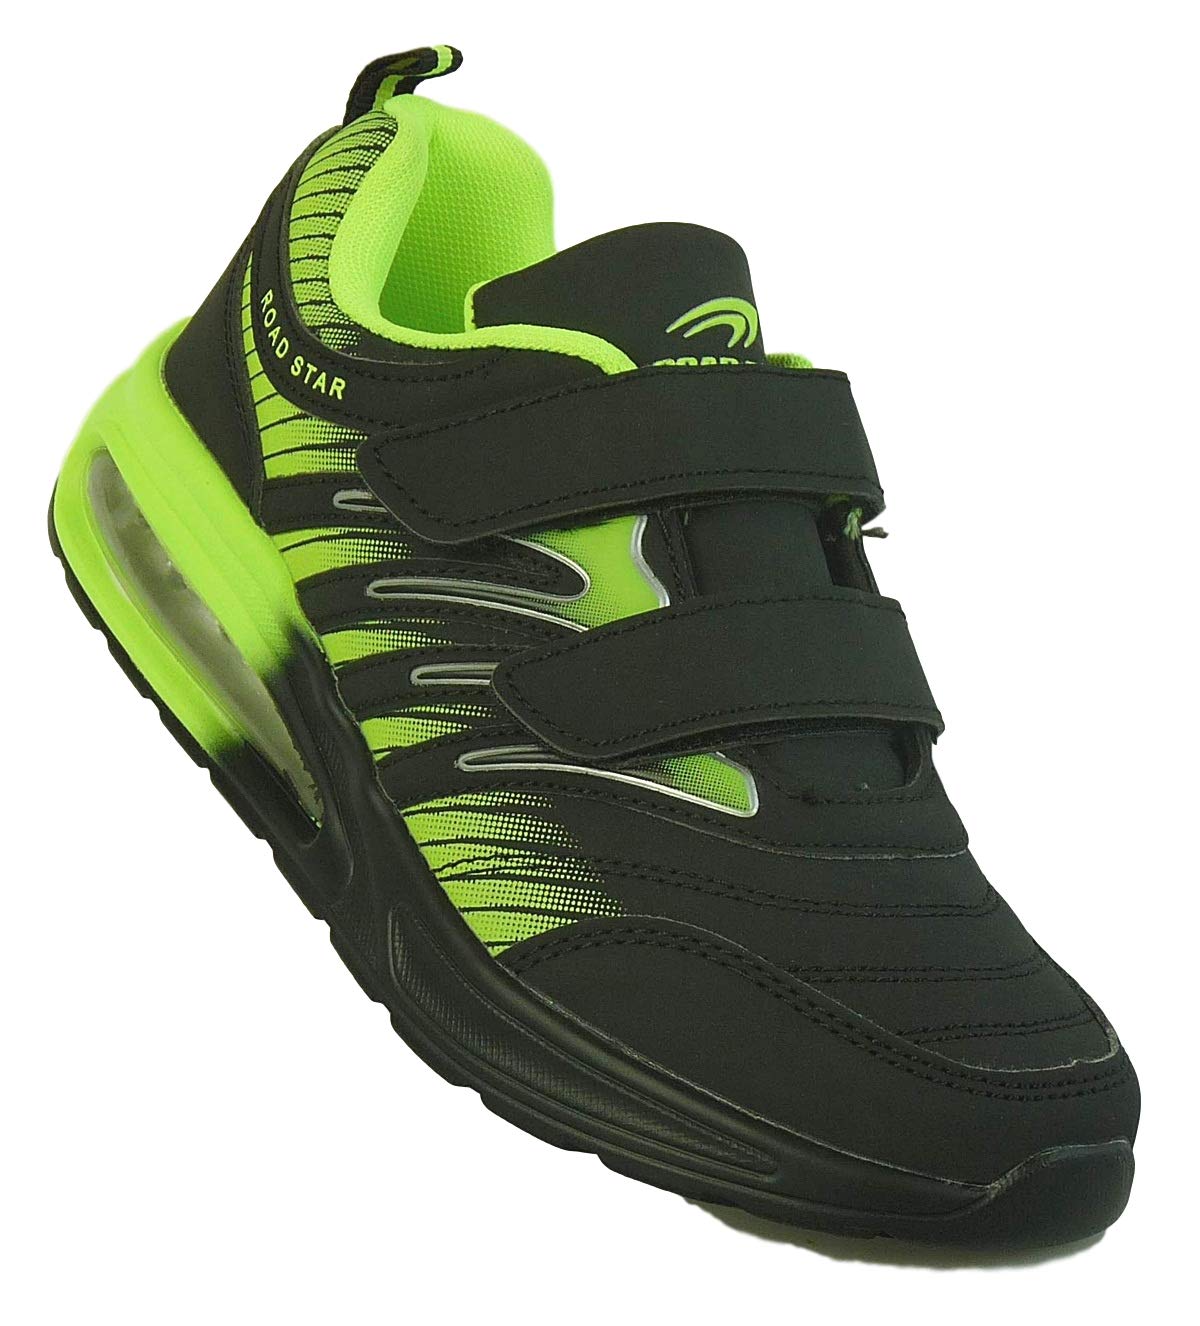 Bootsland Unisex Klett Sportschuhe Sneaker Turnschuhe Freizeitschuhe 001, Schuhgröße:43, Farbe:Schwarz/Grün